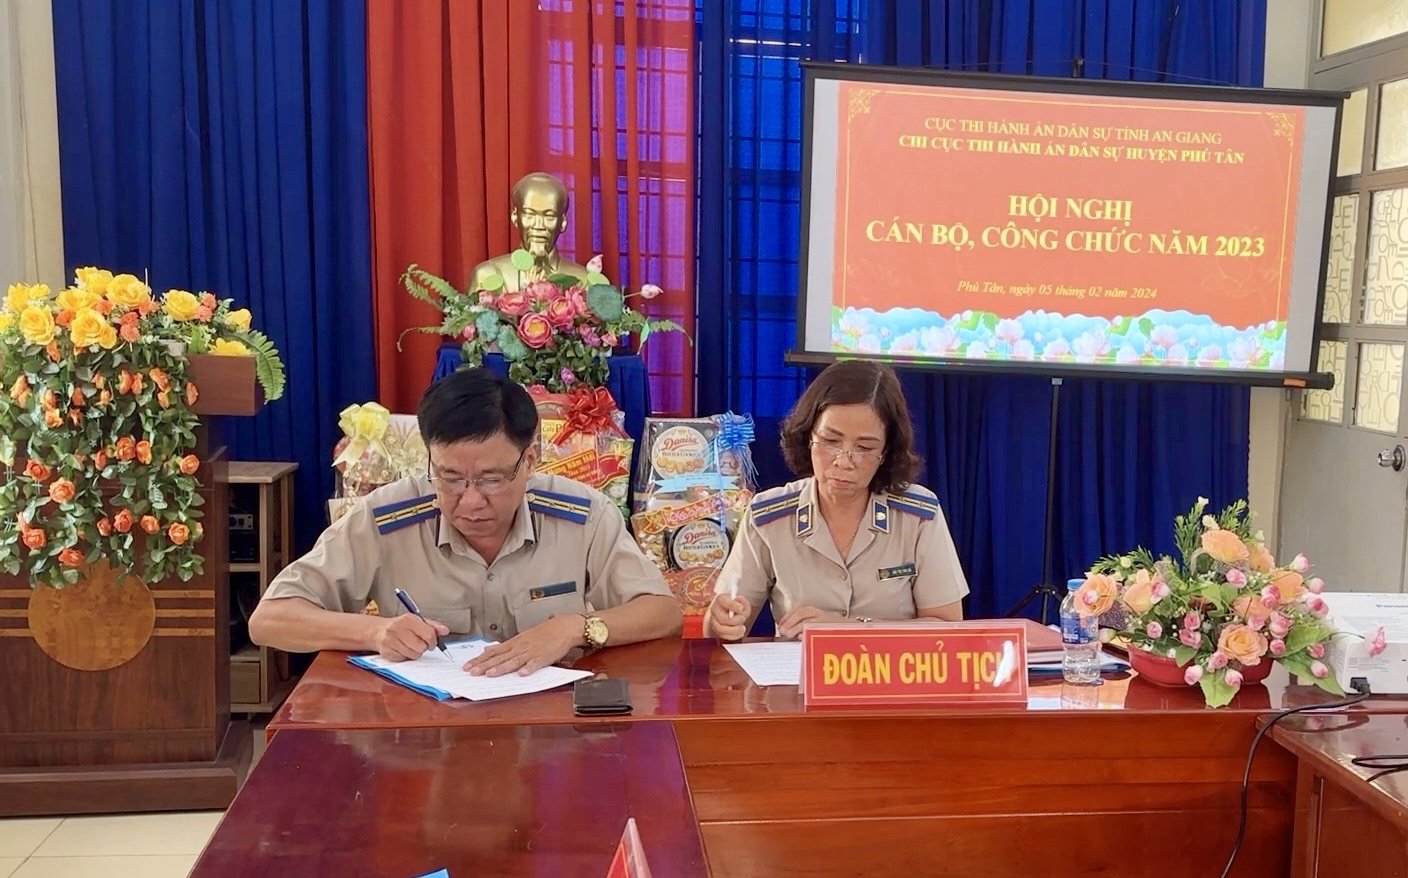 Chi cục Thi hành án dân sự huyện Phú Tân tổ chức Hội nghị cán bộ, công chức năm 2023